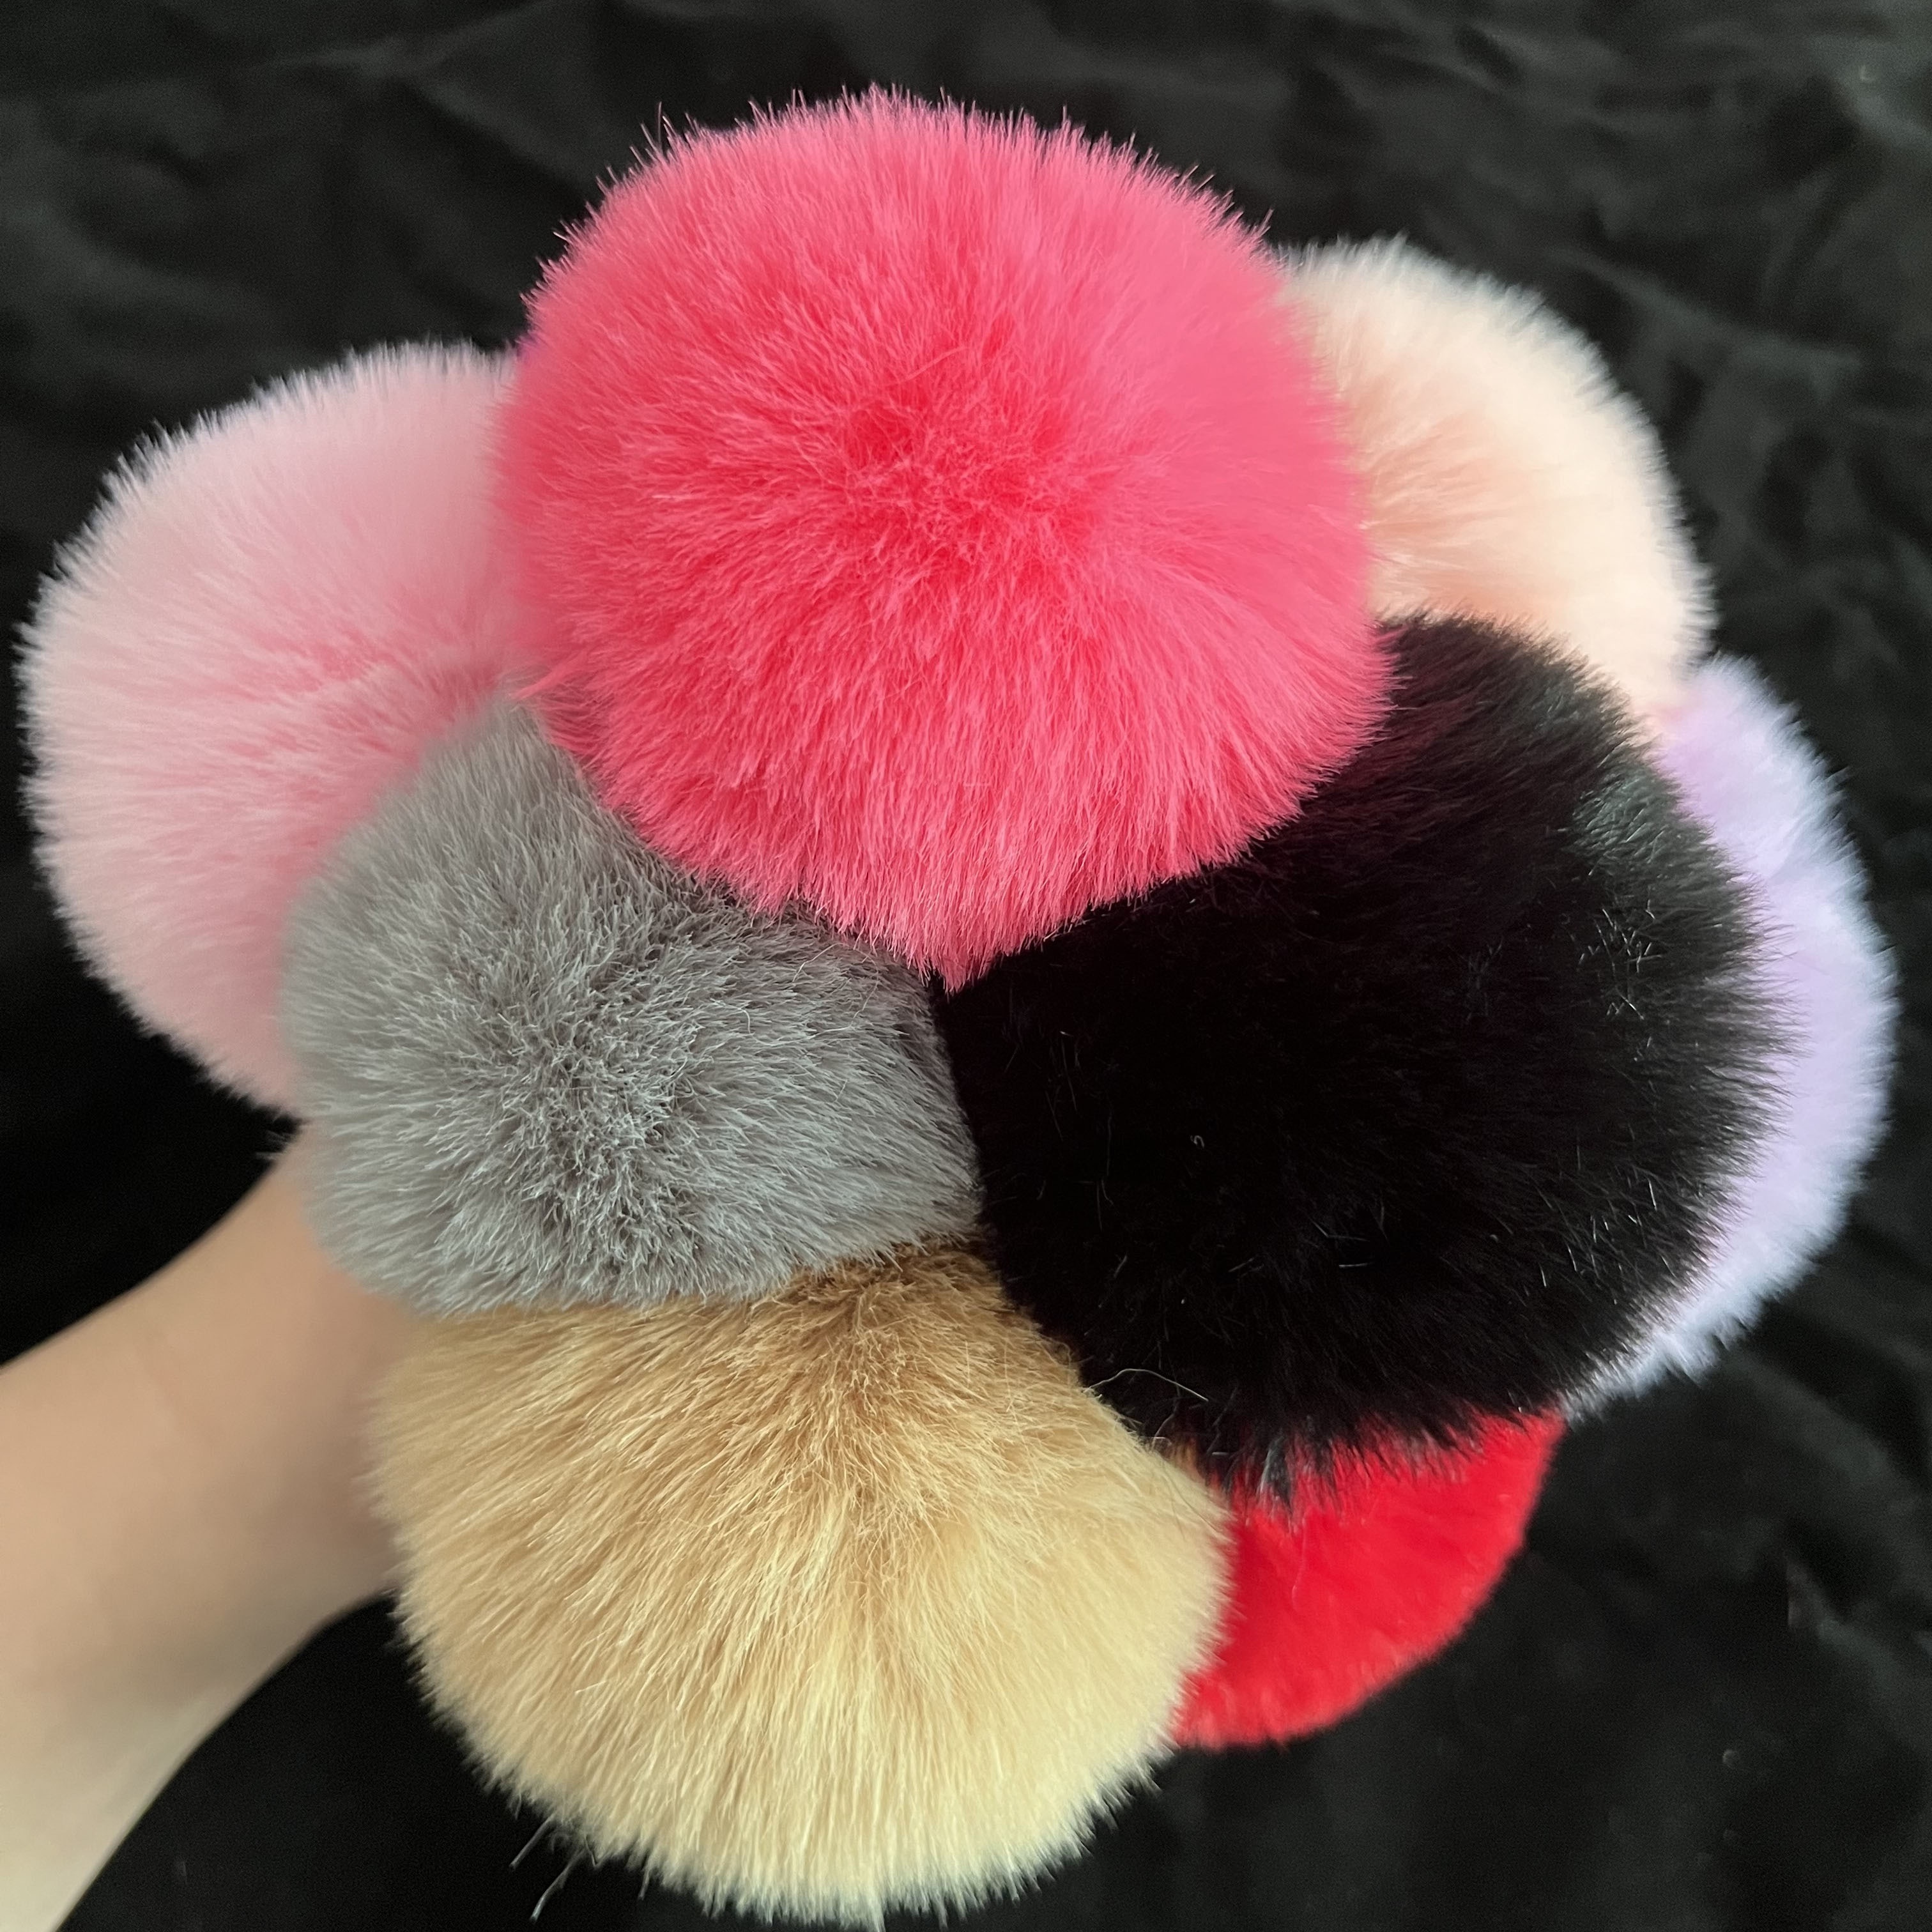 Colored Pom Pom Keychain Bulk Heart Fluffy Fur Puff Ball Key Chain